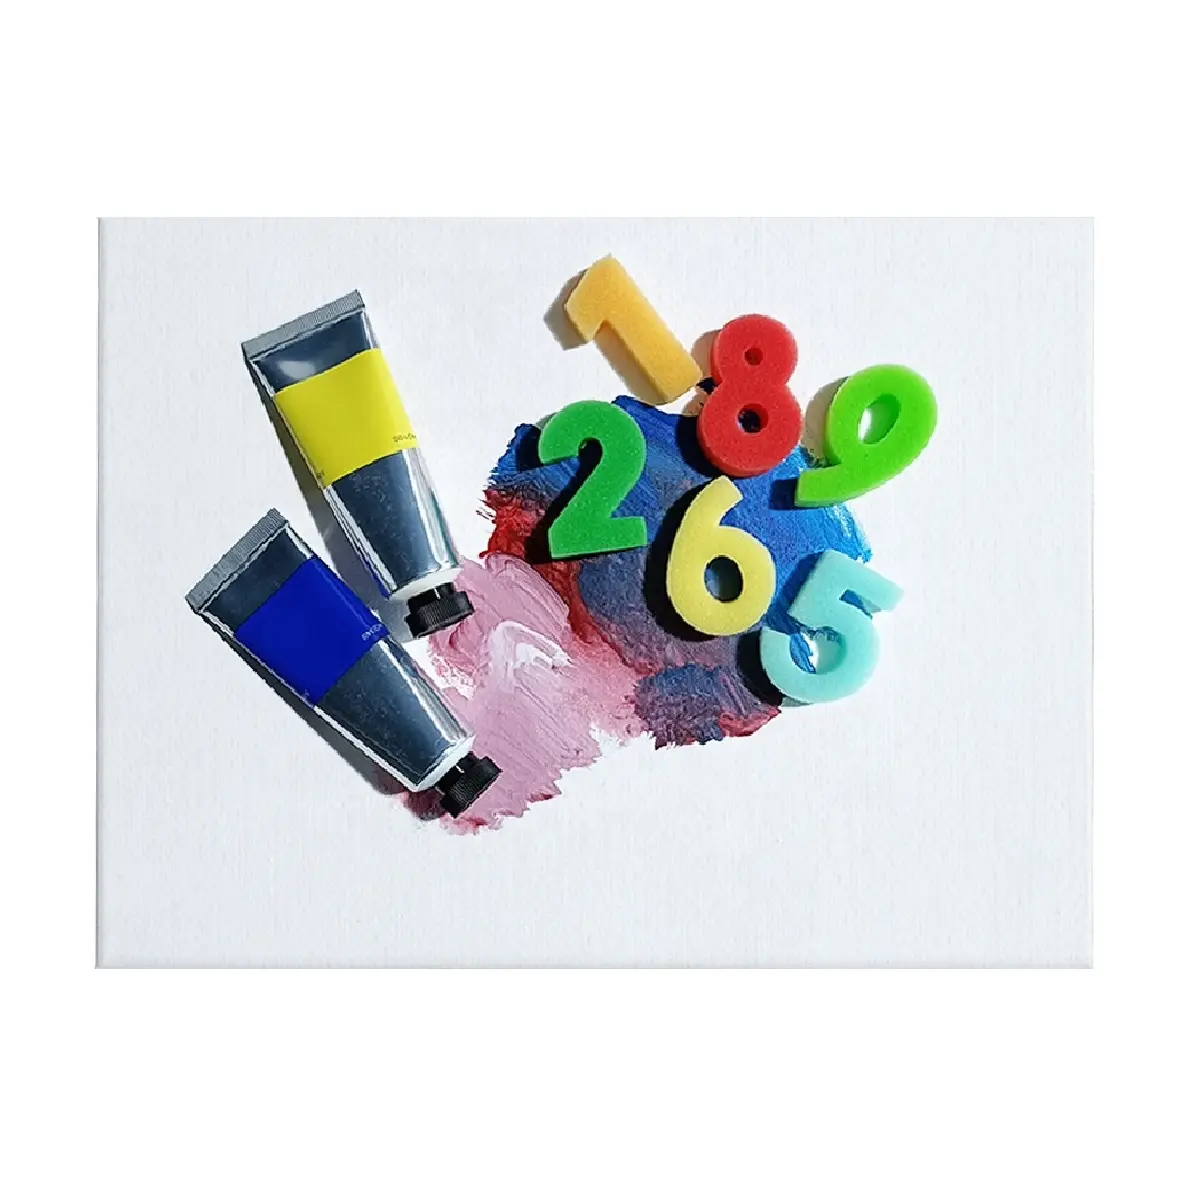 Çocuklar için sanat seti toptan boyama seti okul stüdyo boyama hediye